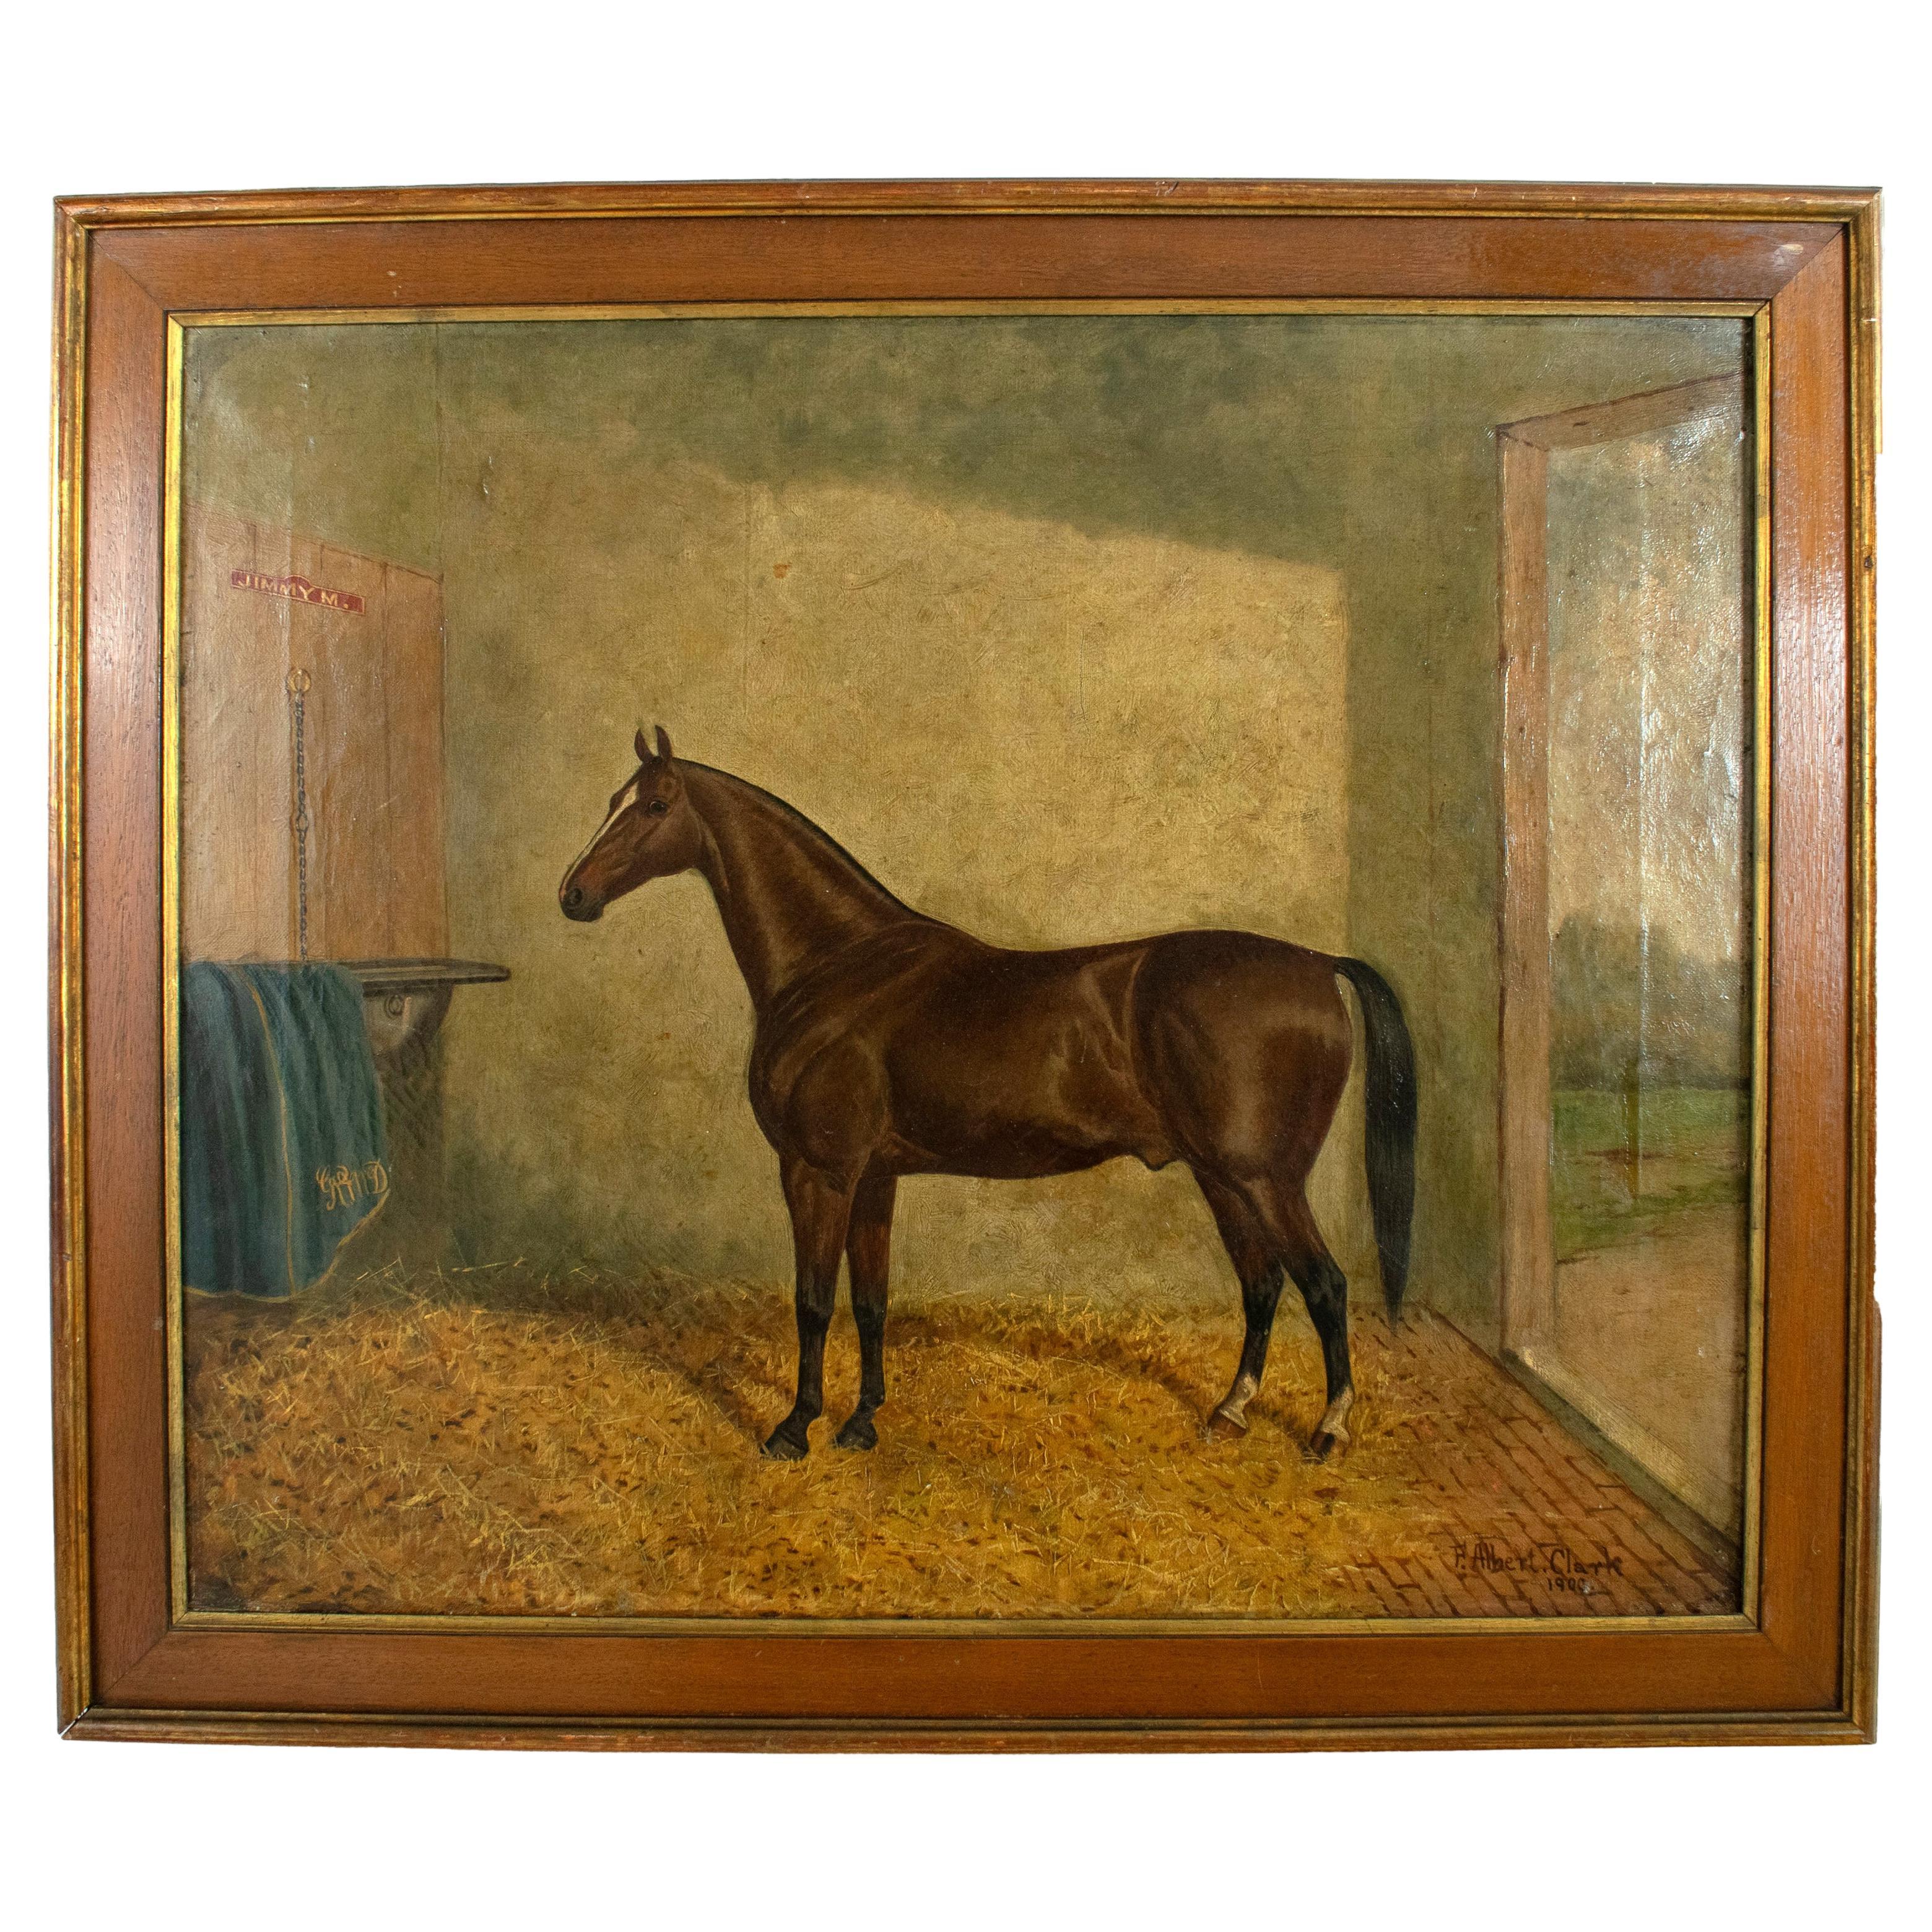 ALBERT CLARK daté de 1900 - Huile sur toile Jimmy M, portrait d'un cheval